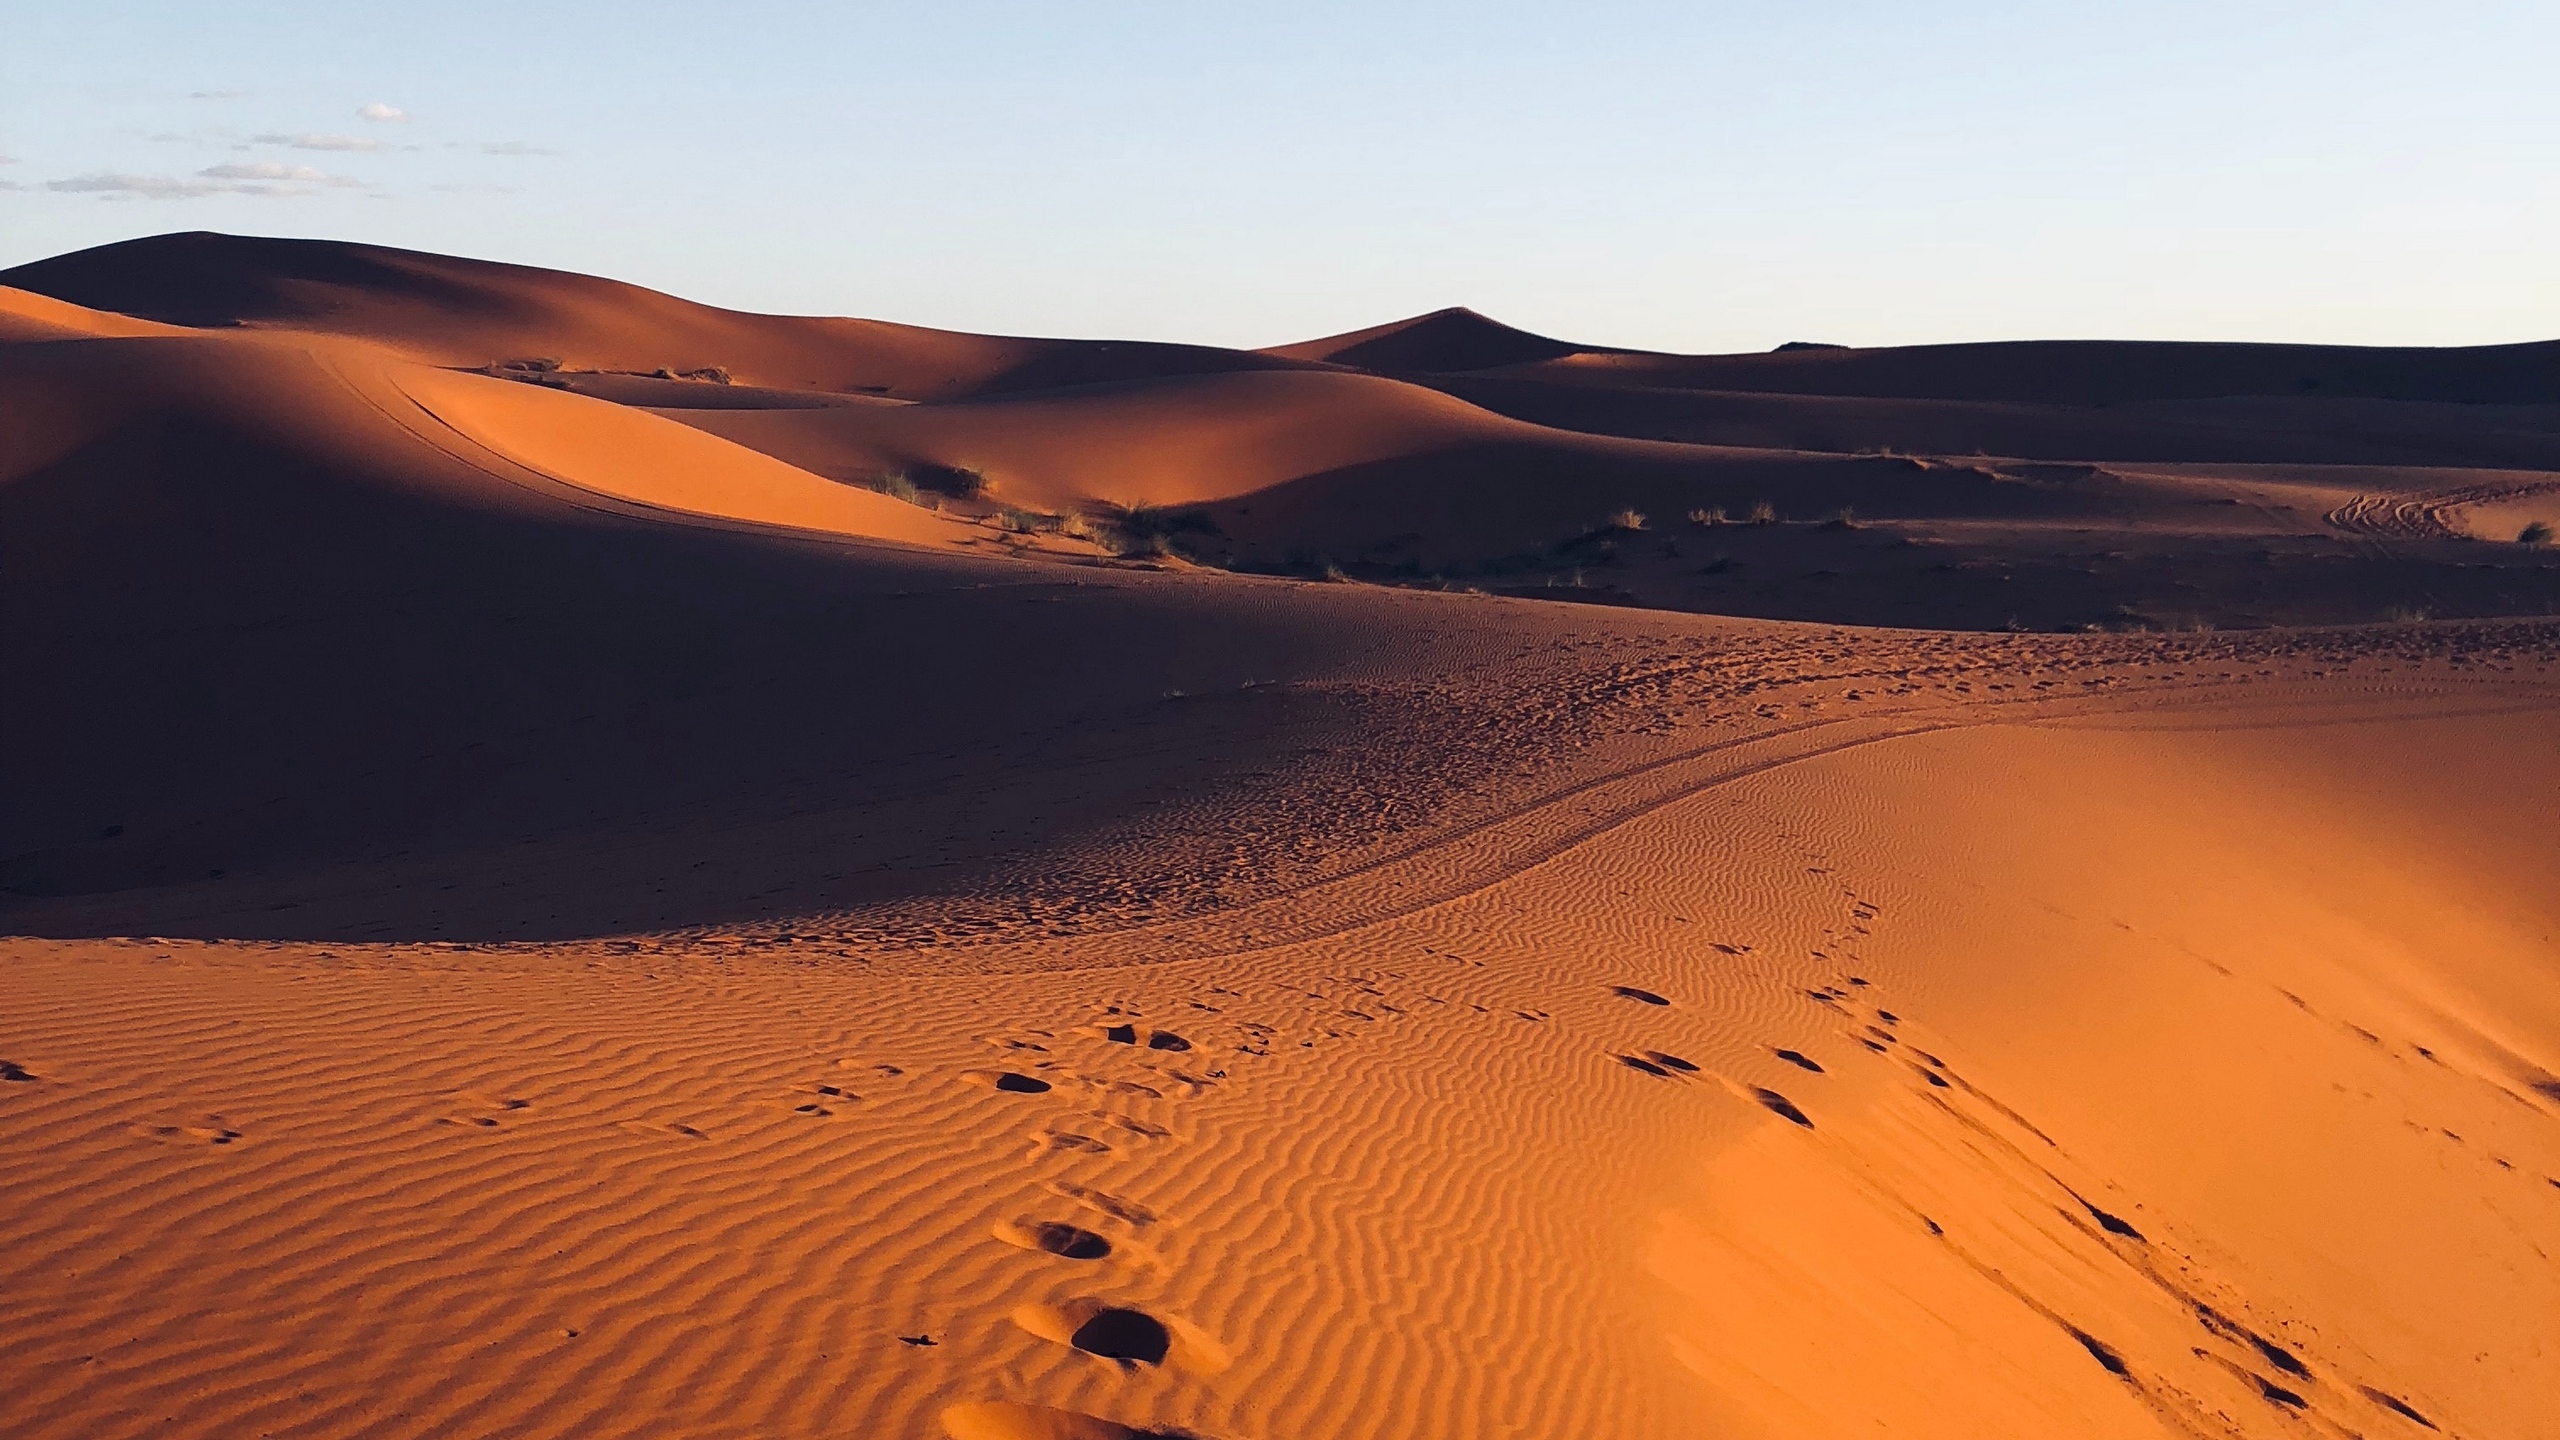 Wallpaper Desert, Sand, Footprint, Morocco - Desert Background 1920 X 1080 , HD Wallpaper & Backgrounds